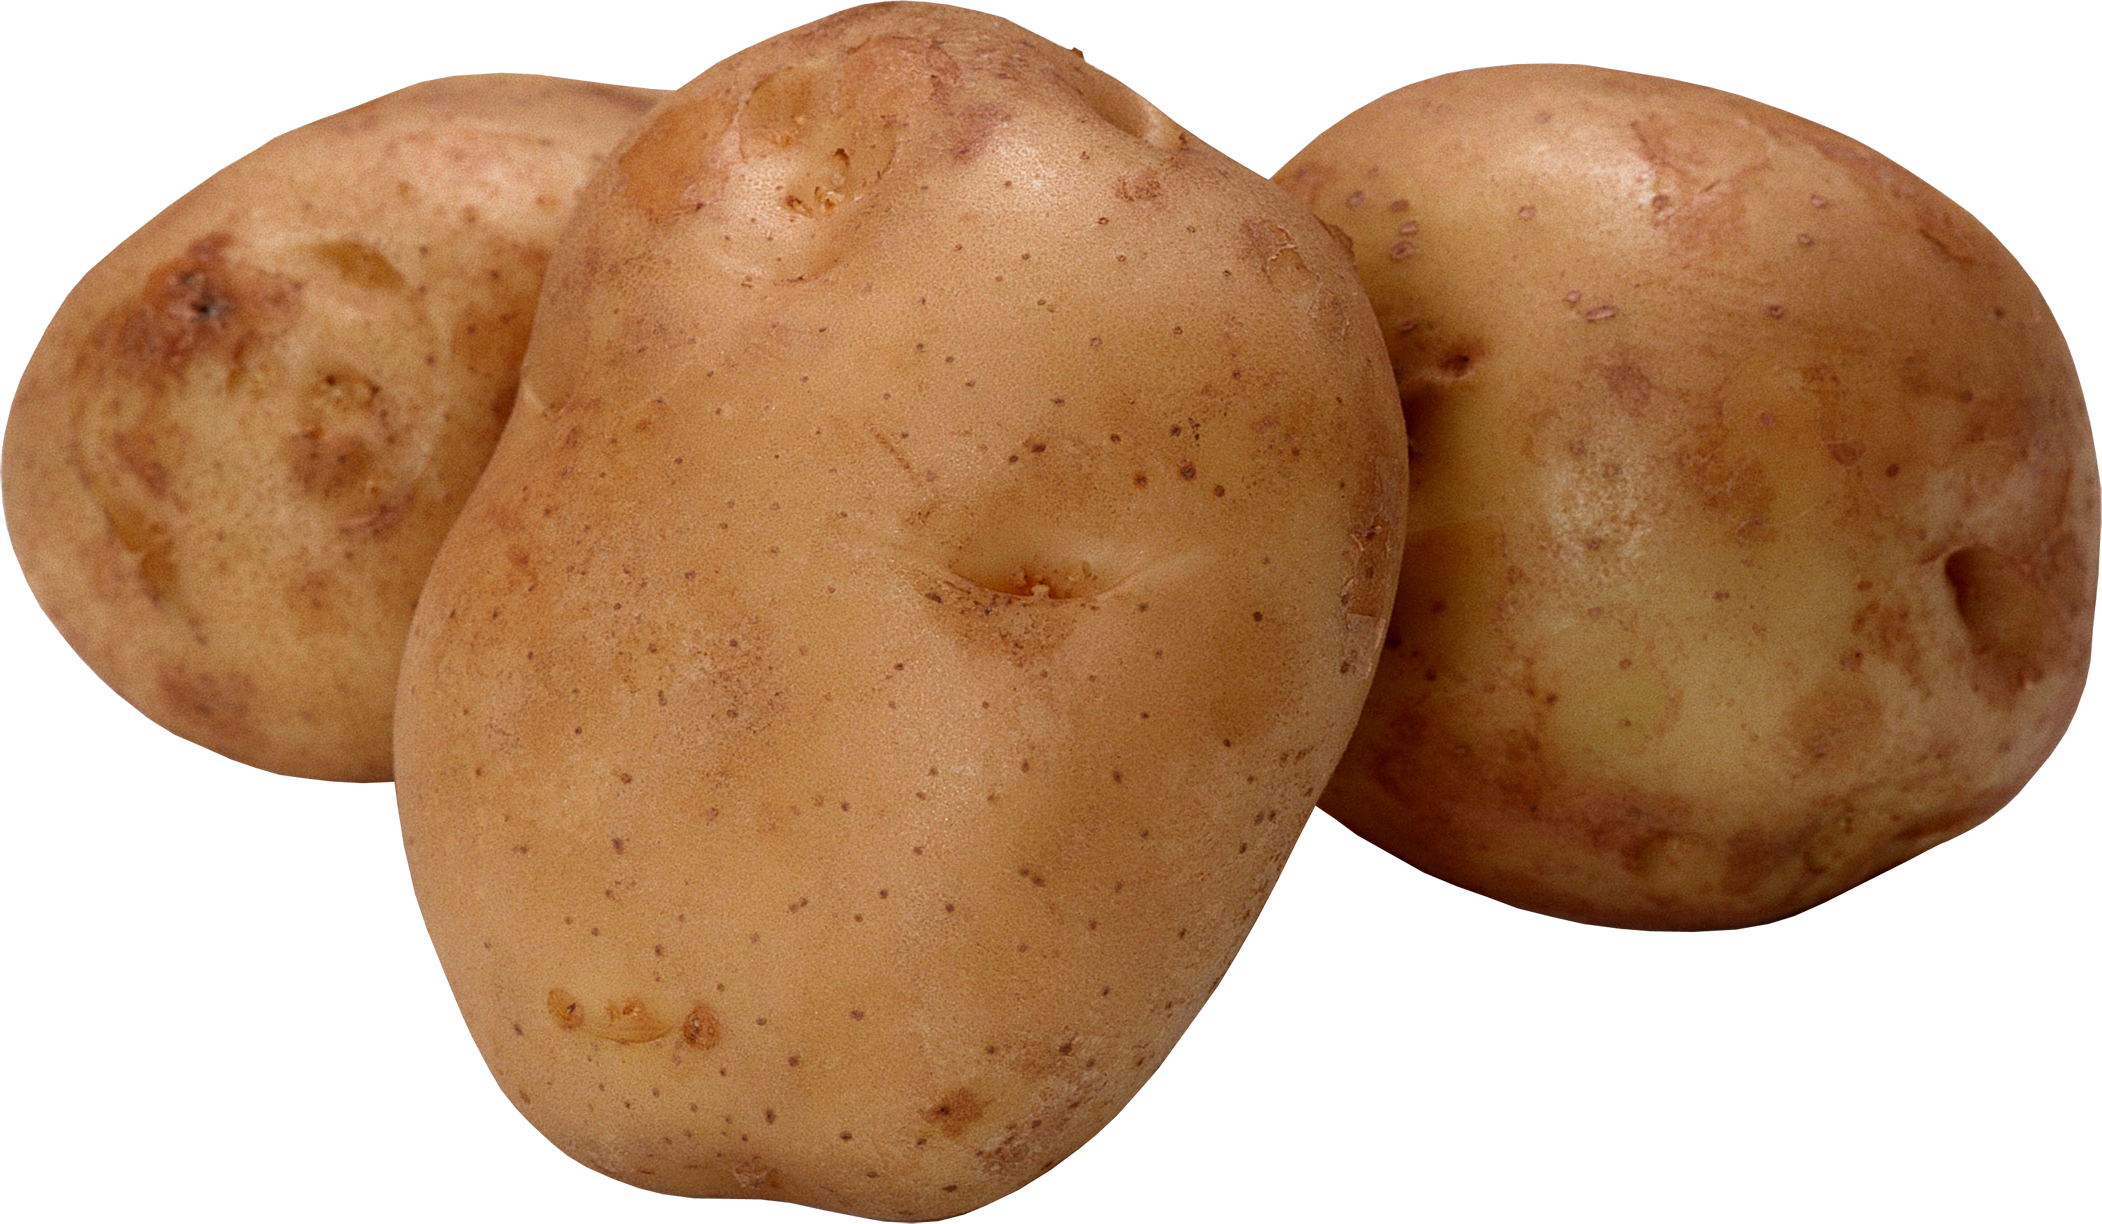 Kartoffel